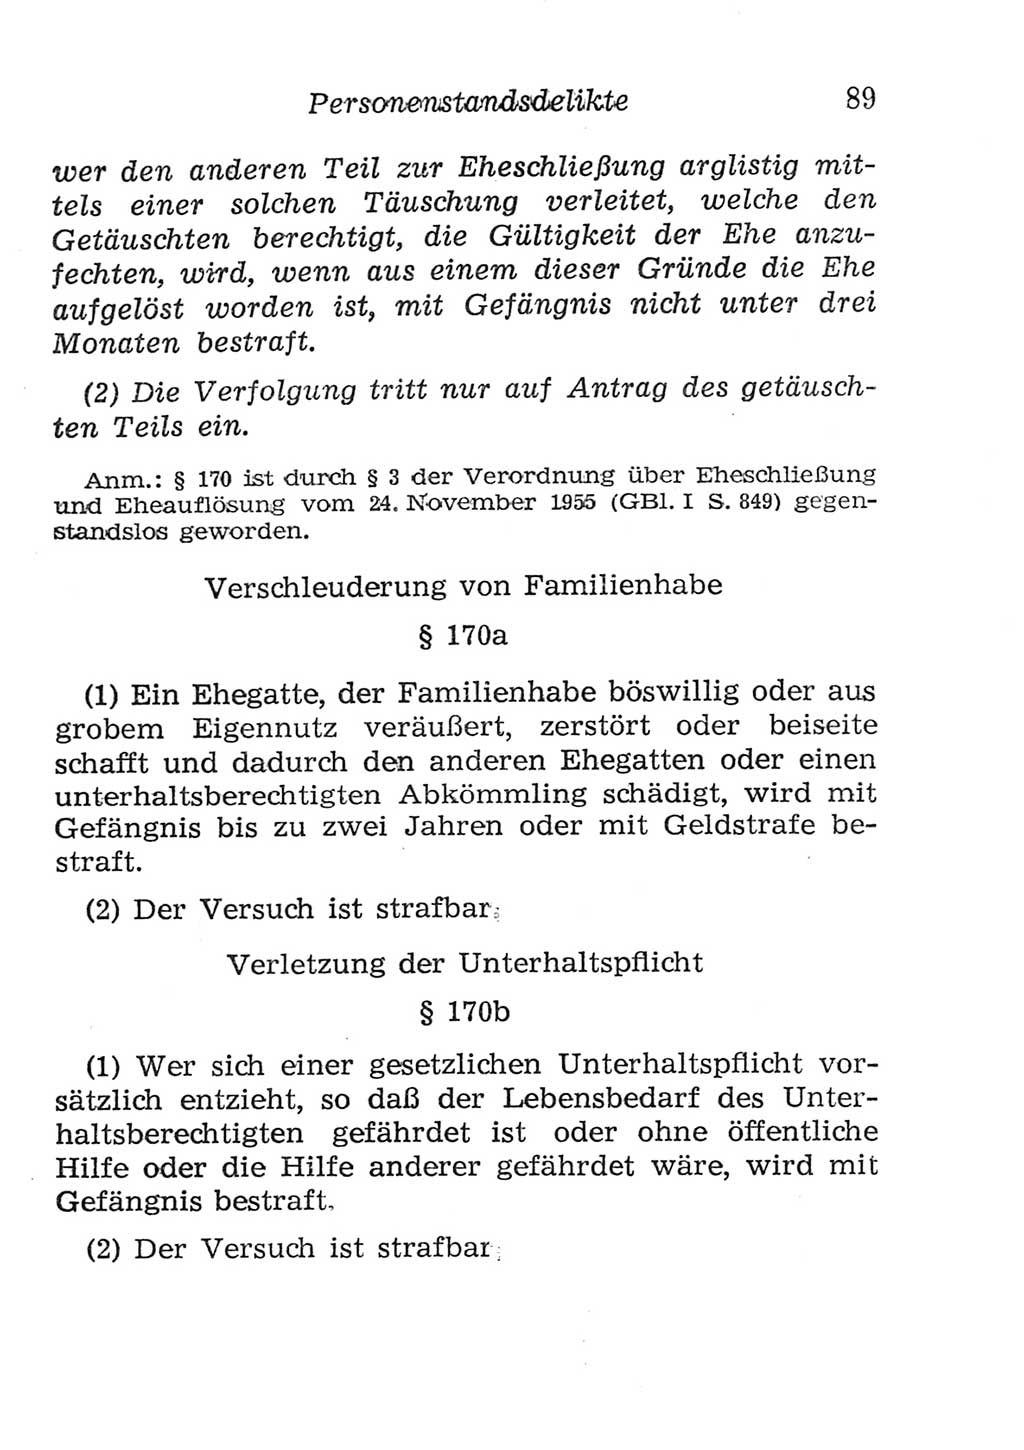 Strafgesetzbuch (StGB) und andere Strafgesetze [Deutsche Demokratische Republik (DDR)] 1957, Seite 89 (StGB Strafges. DDR 1957, S. 89)